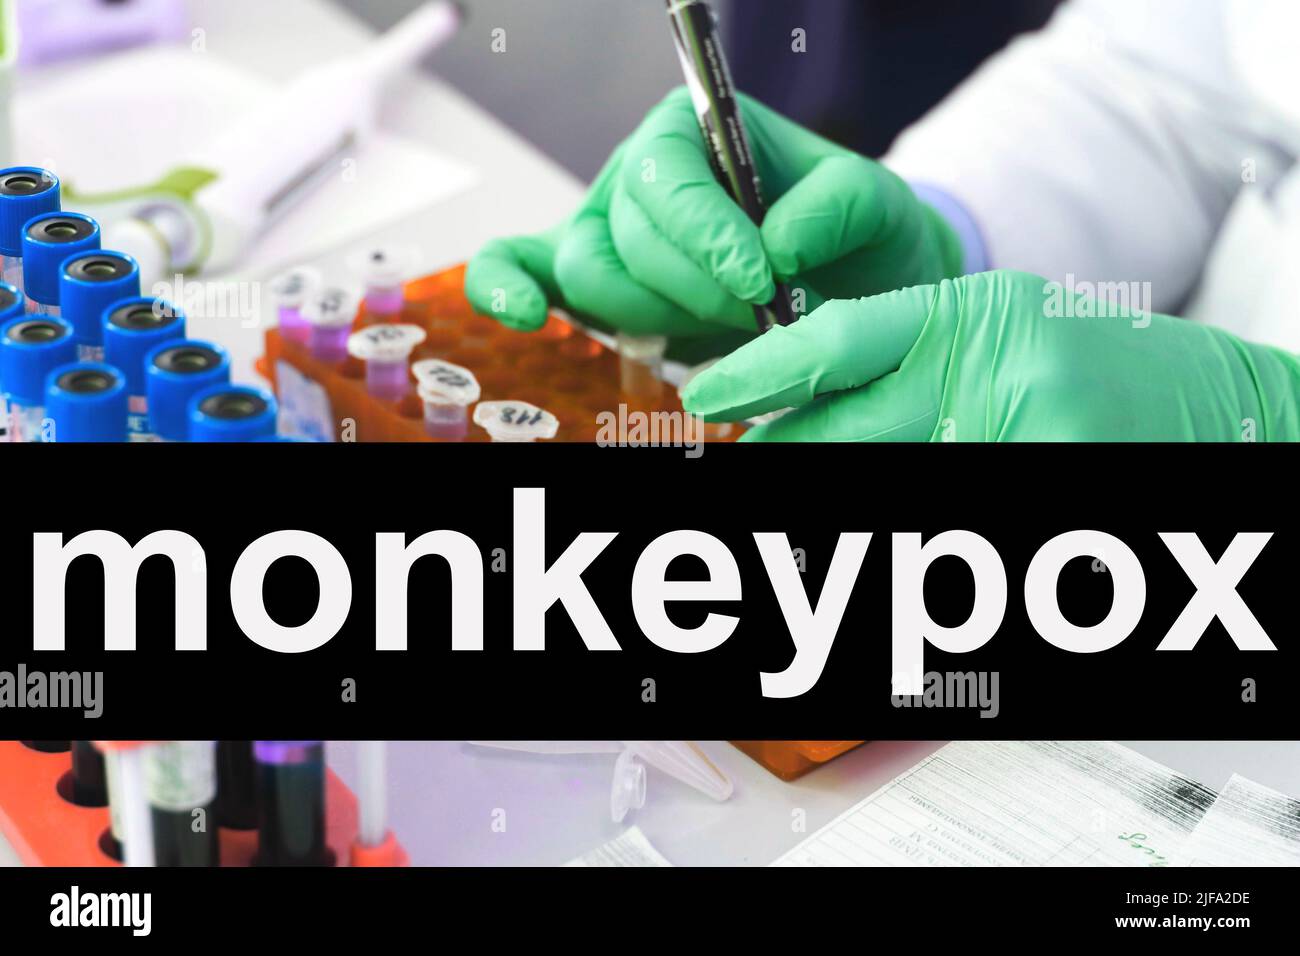 Analisi delle provette Monkeypox in laboratorio Foto Stock